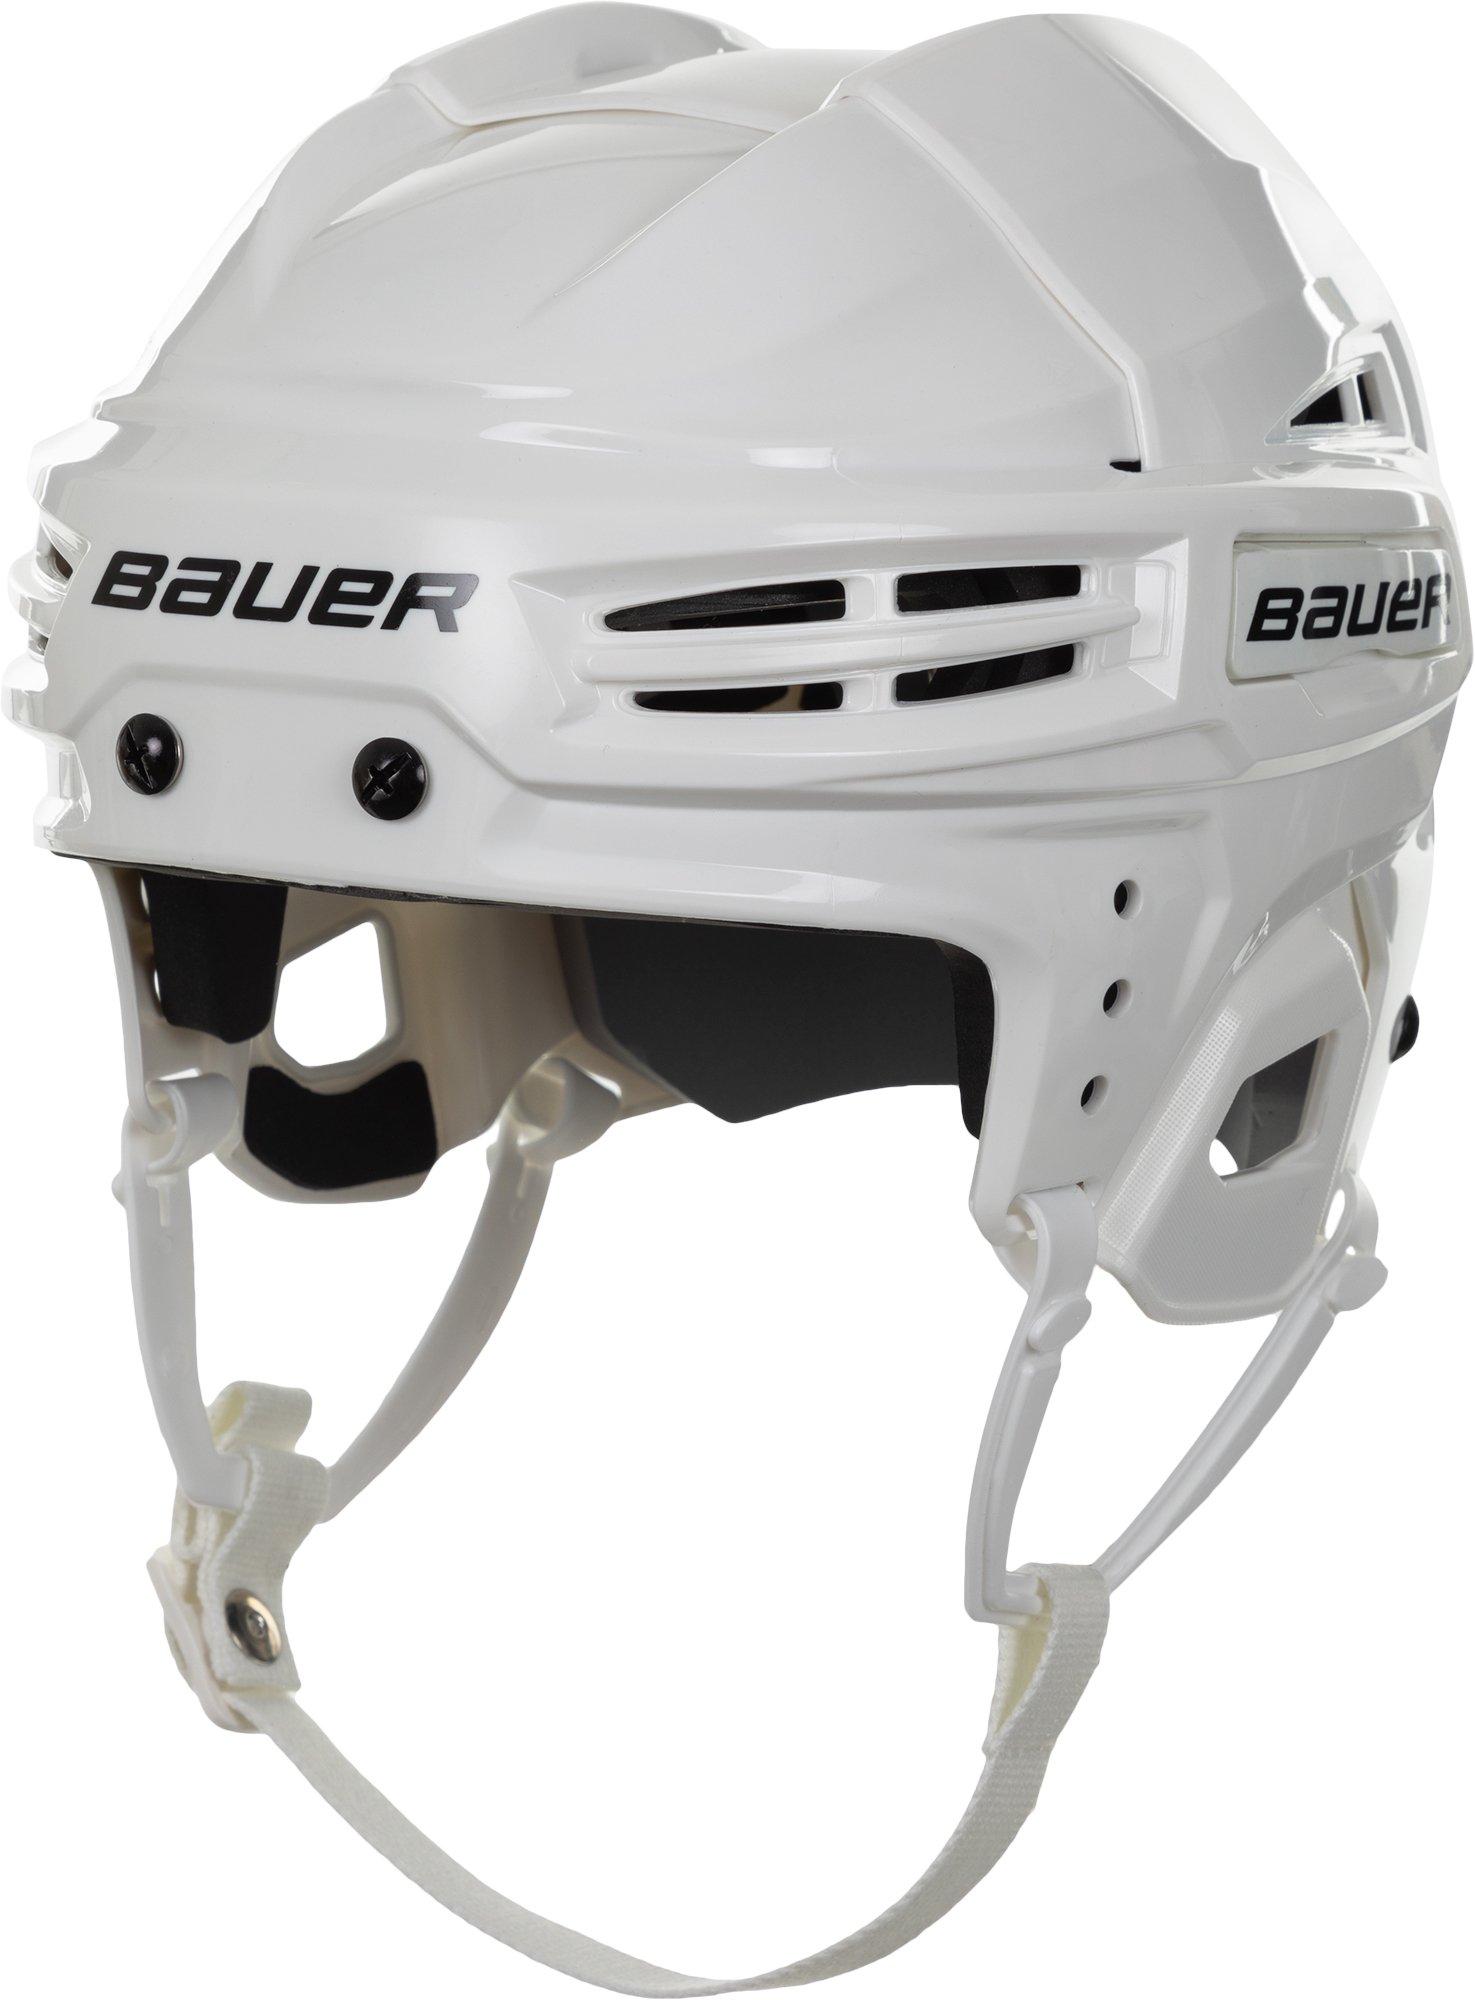 Спортмастер хоккей. ССМ 710 шлем Размеры. Шлем хоккейный Nike Bauer one95 цена. Спортмастер защита